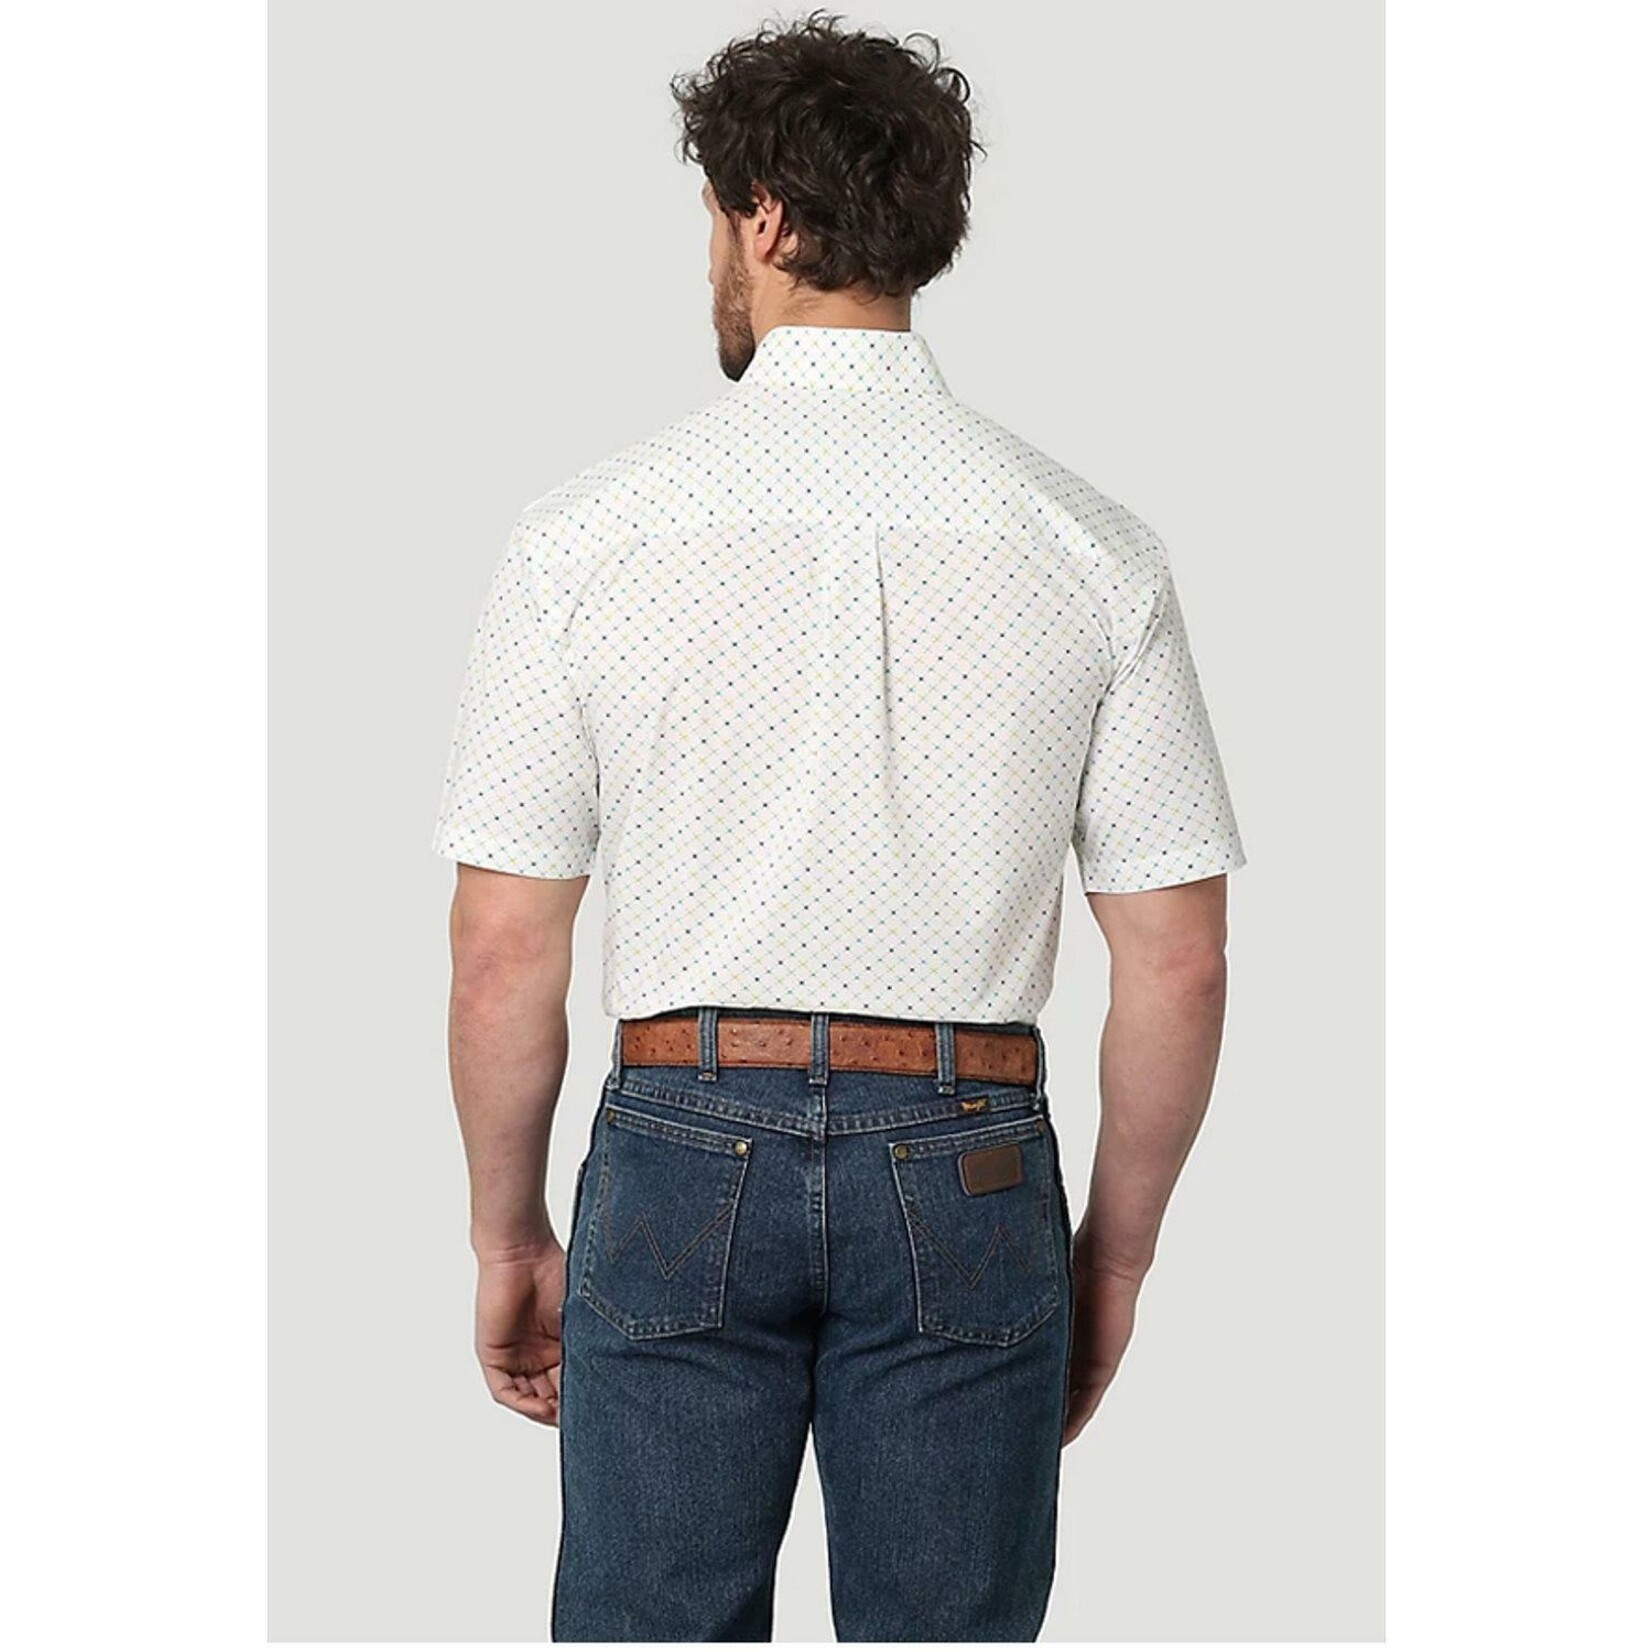 Wrangler Wrangler - Men's George Strait Collection Short Sleeve Shirt - 112315017